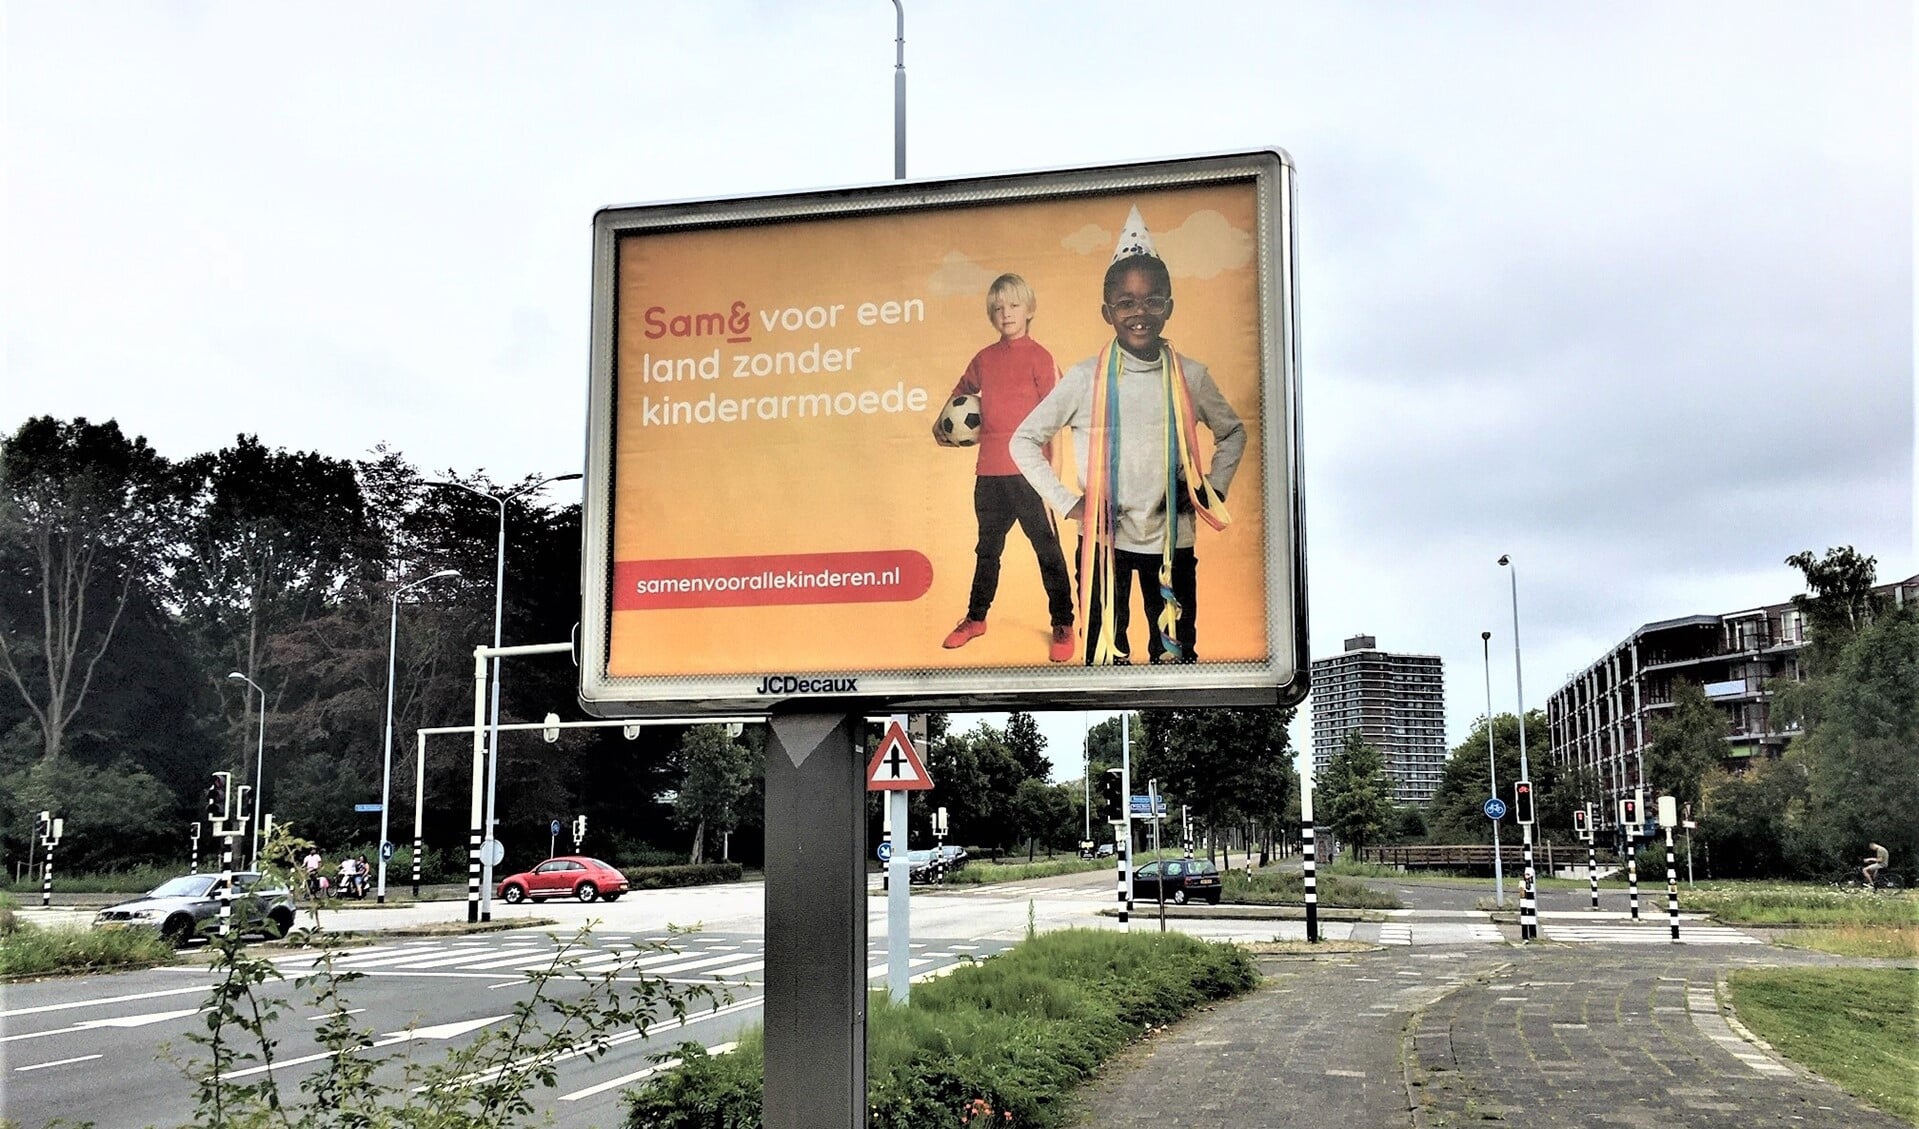 Ook in Leidschendam-Voorburg staan grote billboards waarop melding gemaakt wordt van de actie van Sam&.